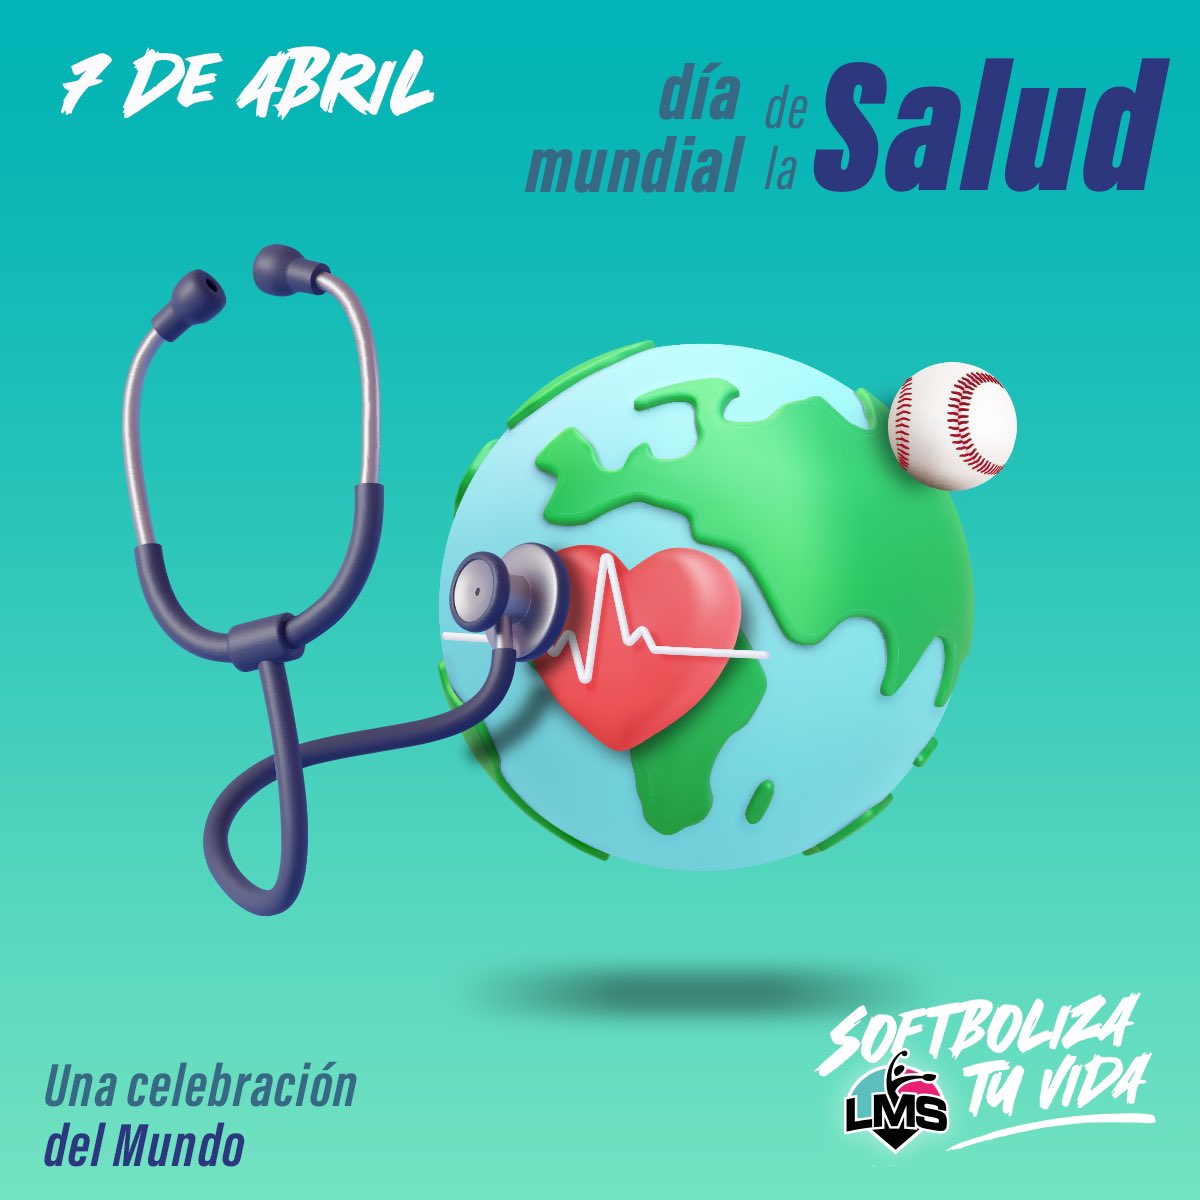 7 de abril 📅 | Día mundial de la salud Trabajemos para mantenerla 💪🏻 🥗 Nuestro reconocimiento a todo el sector salud que trabaja por el bienestar de cada uno de nosotros #SoftbolizaTuVida 🥎